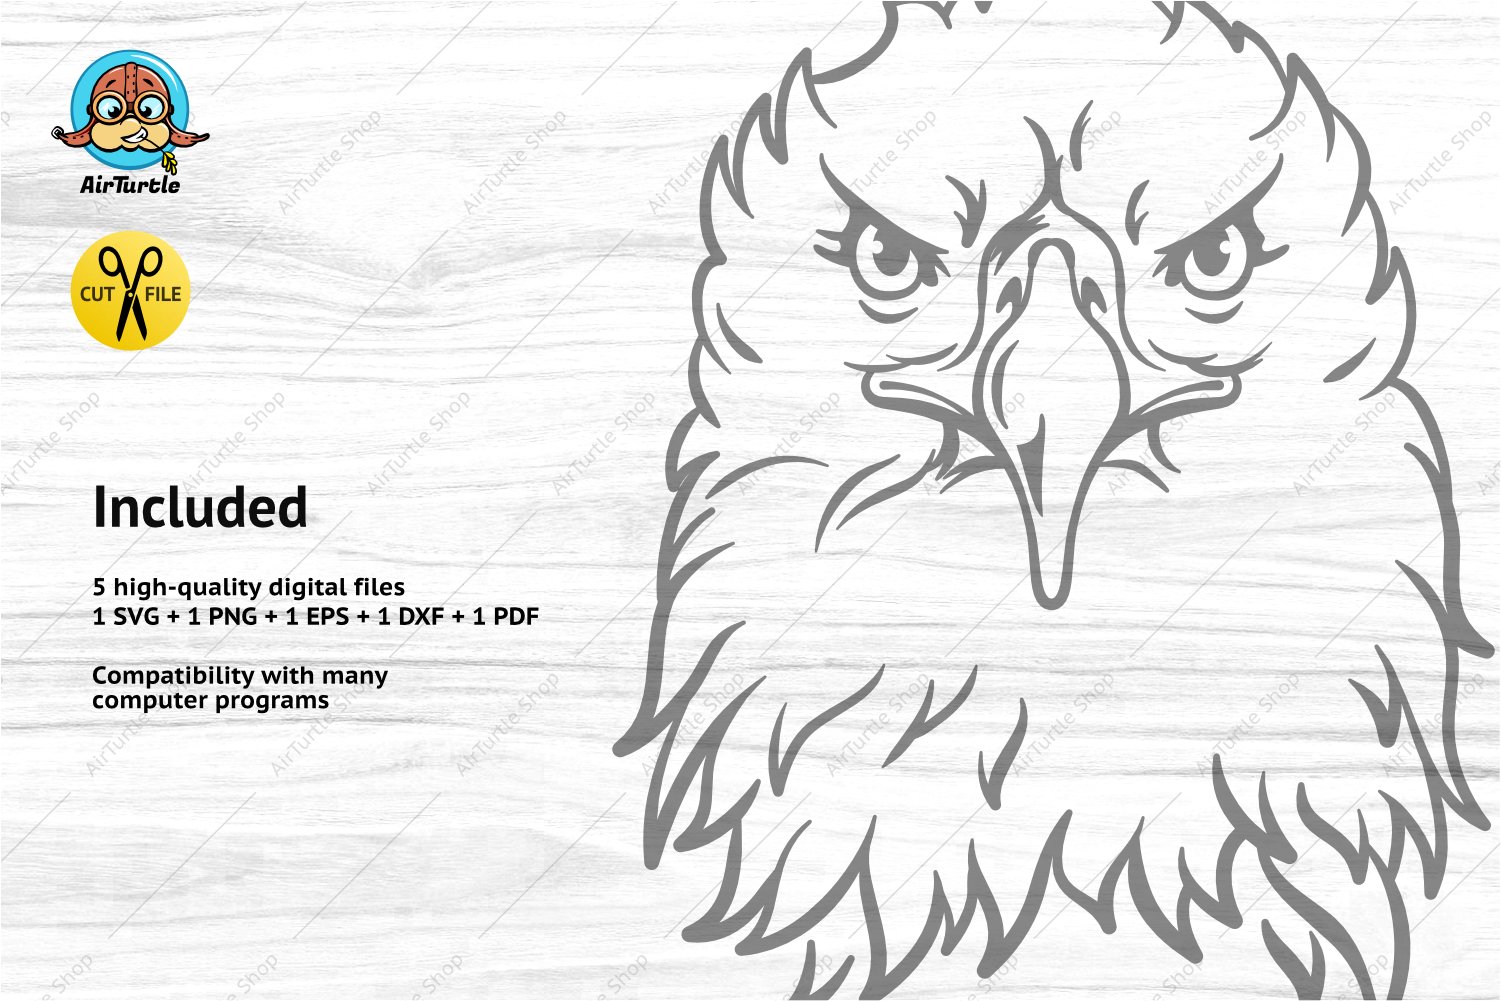 Preview bald eagle svg with description files.